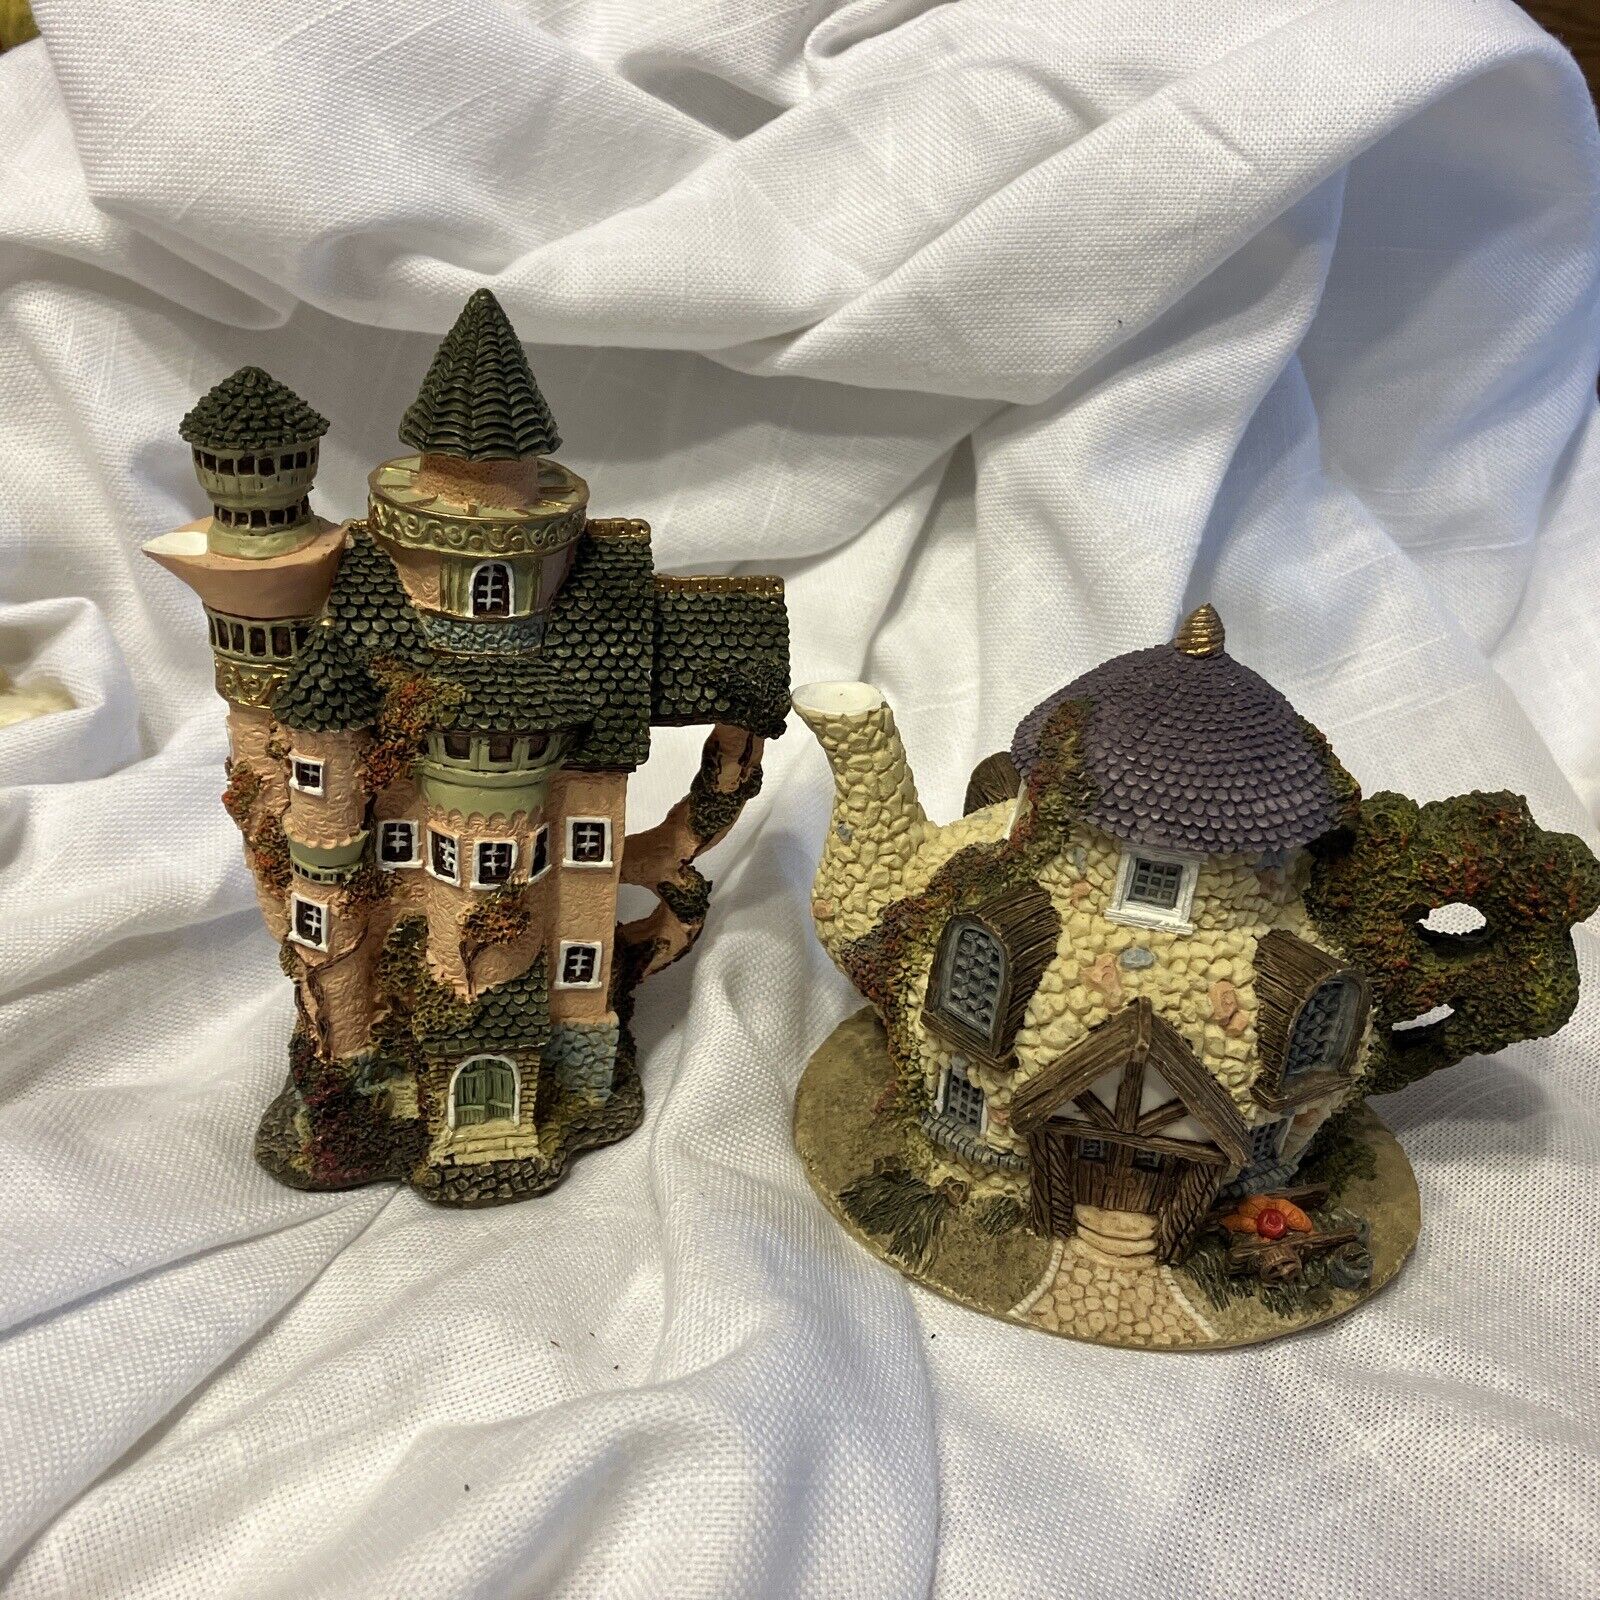 2-Cottage House Figure- Teapot Shaped Unique Shape 4” & 5 1/2”